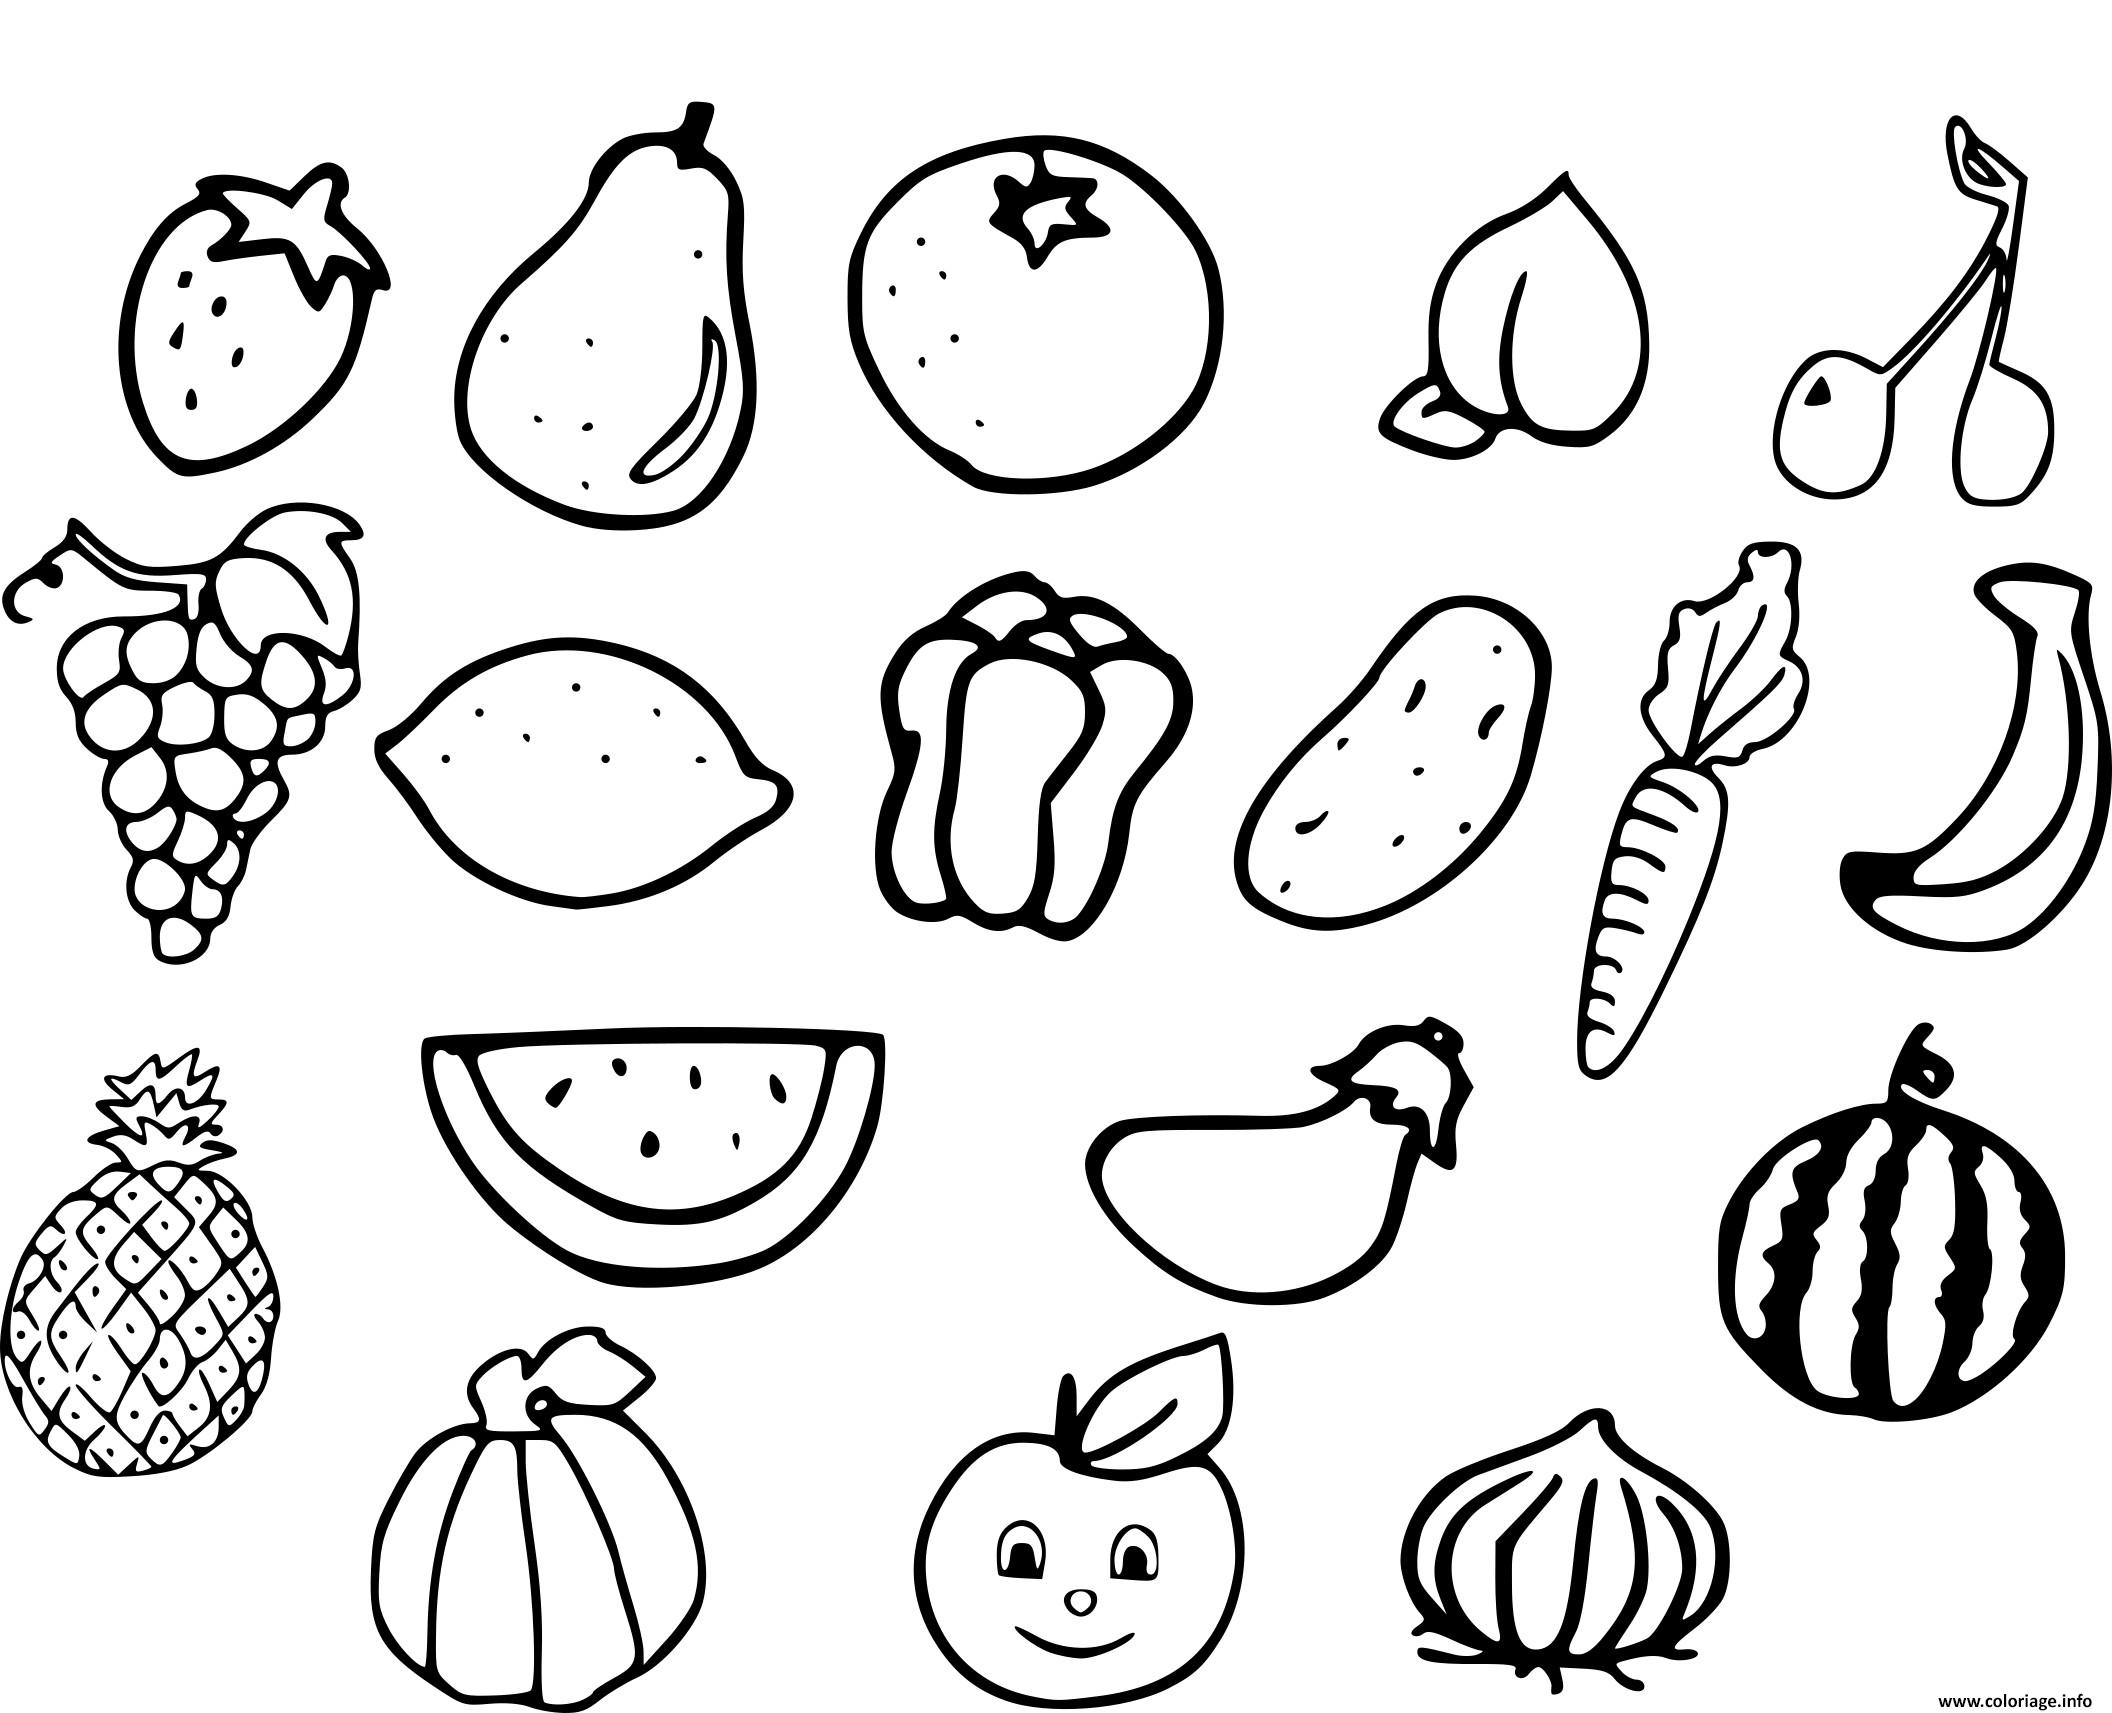 Image de légumes à colorier